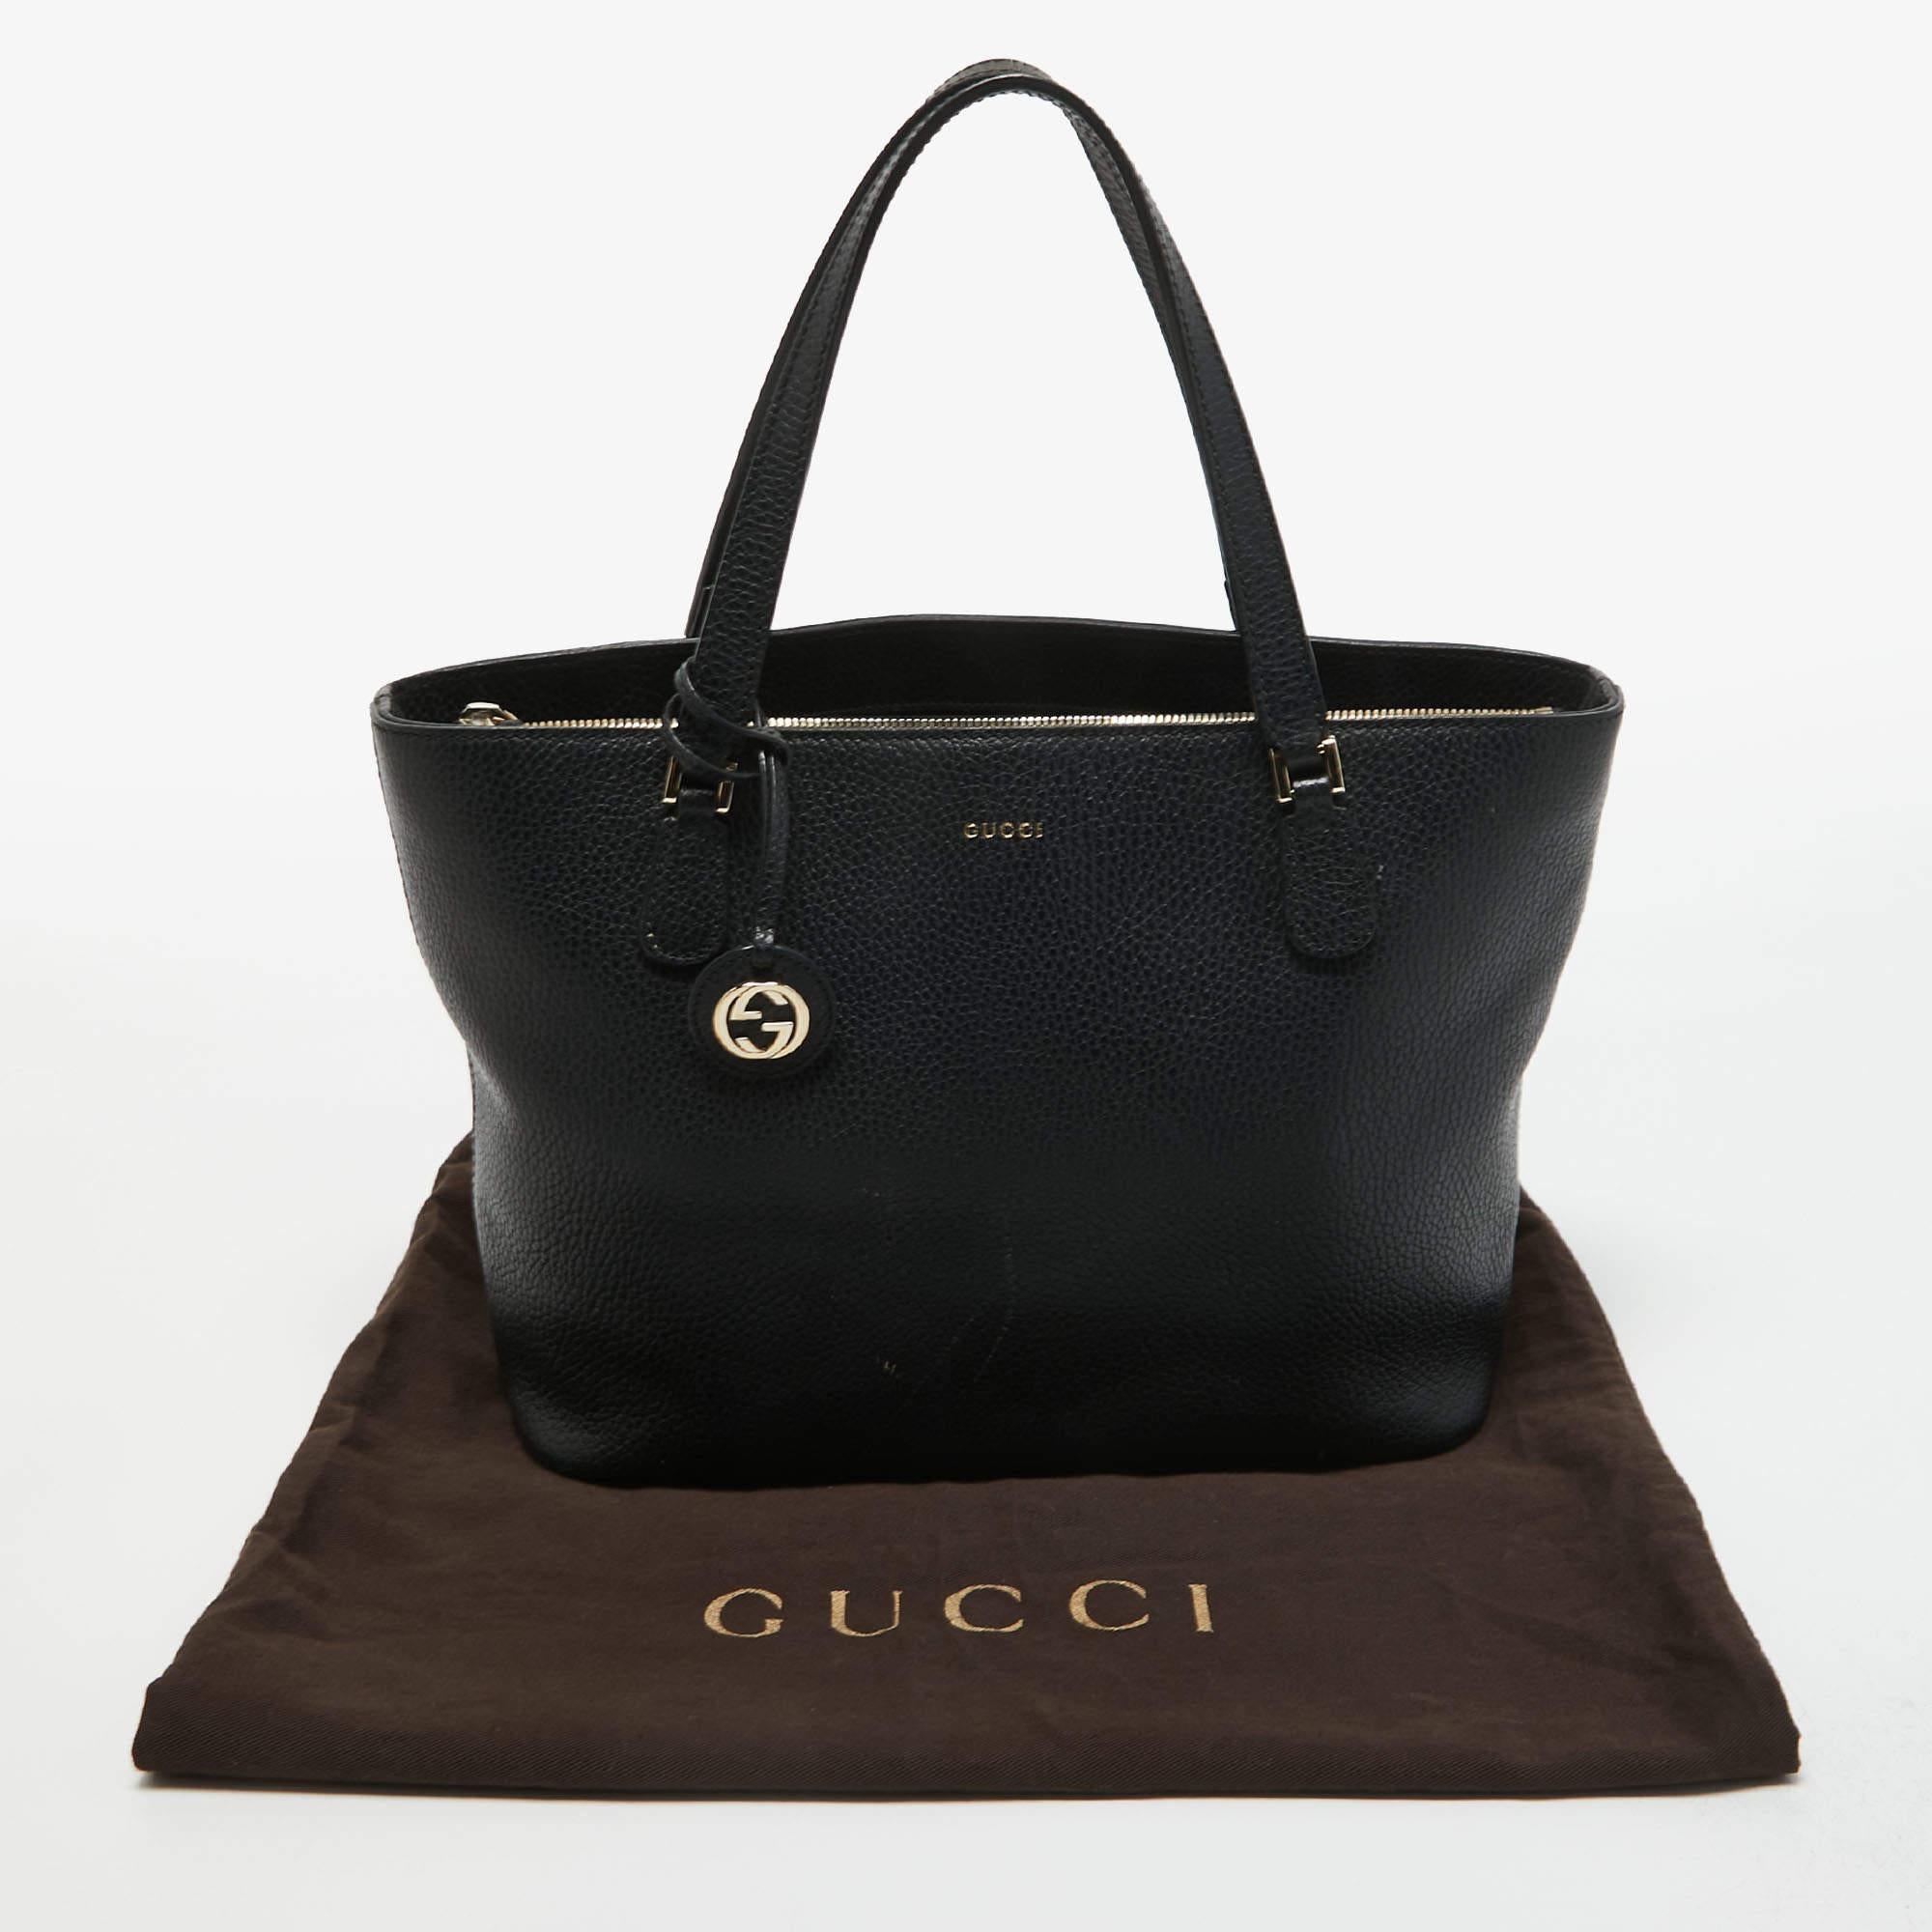 Gucci Black Leather Interlocking G Tote 2